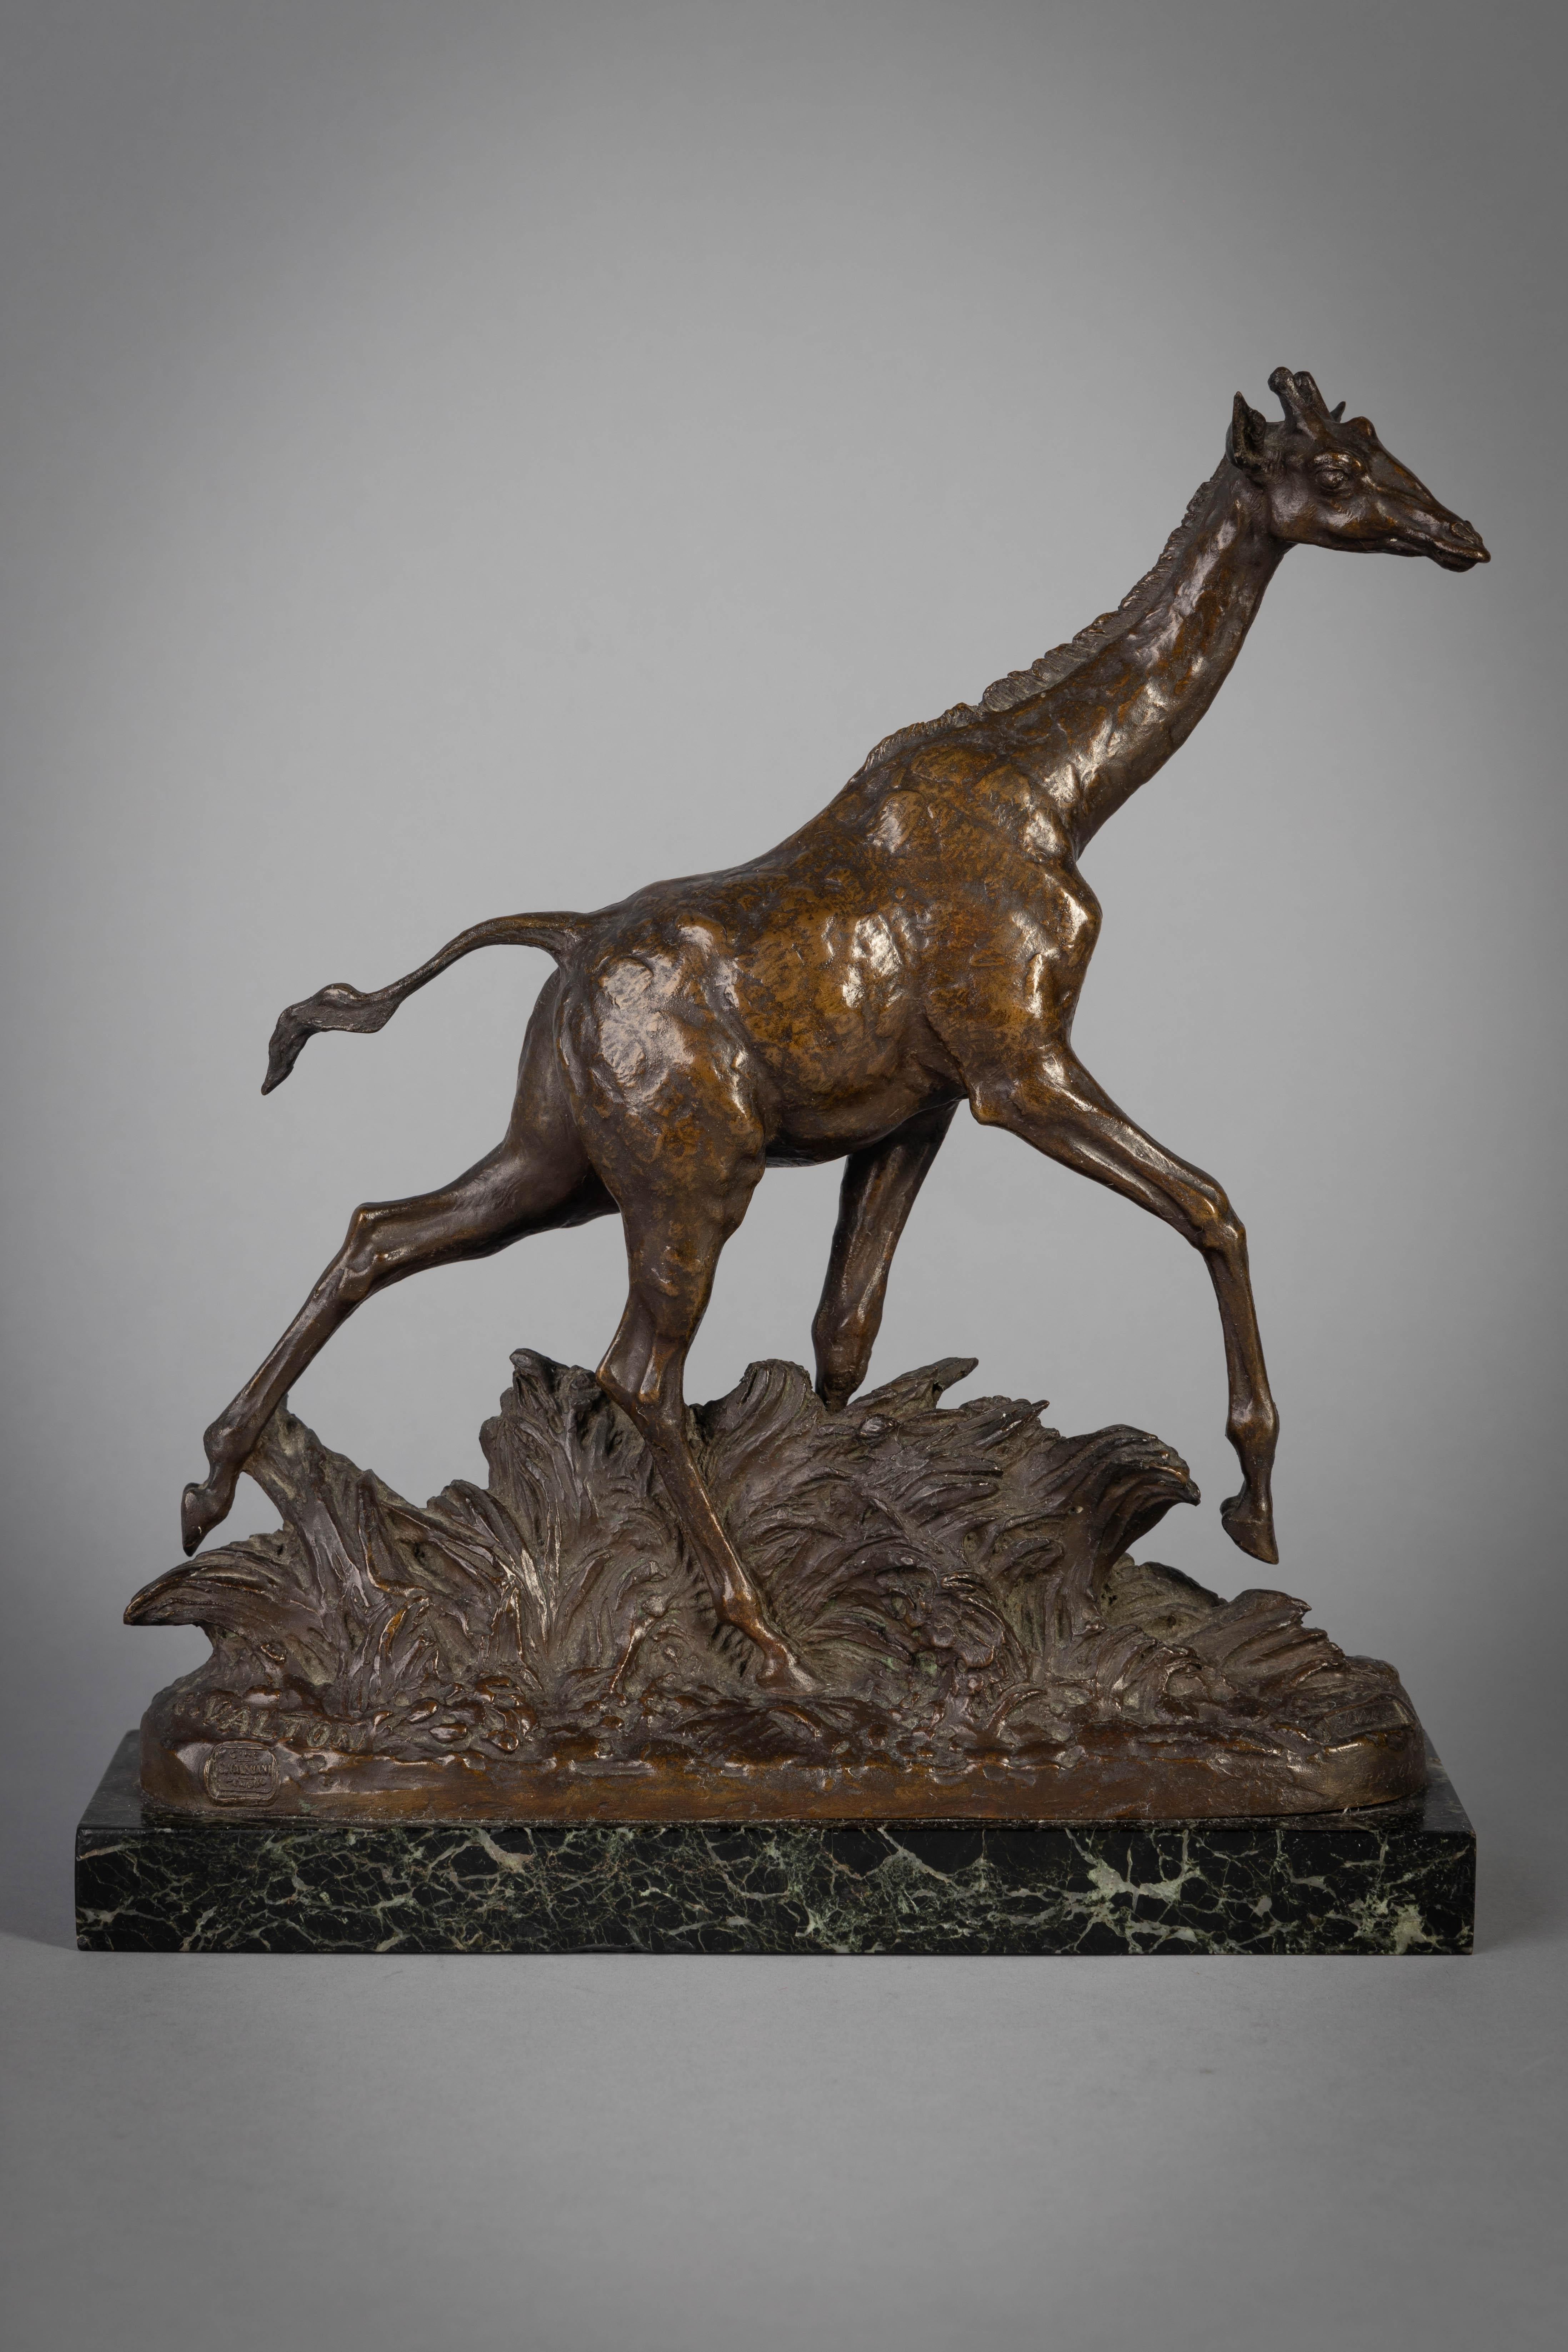 Französische Bronzefigur einer schreitenden Giraffe, von Charles Valton (1851-1918), um 1905

Bezeichnet mit C. Valton und eingeprägter Marke der Gießerei Valsuani.